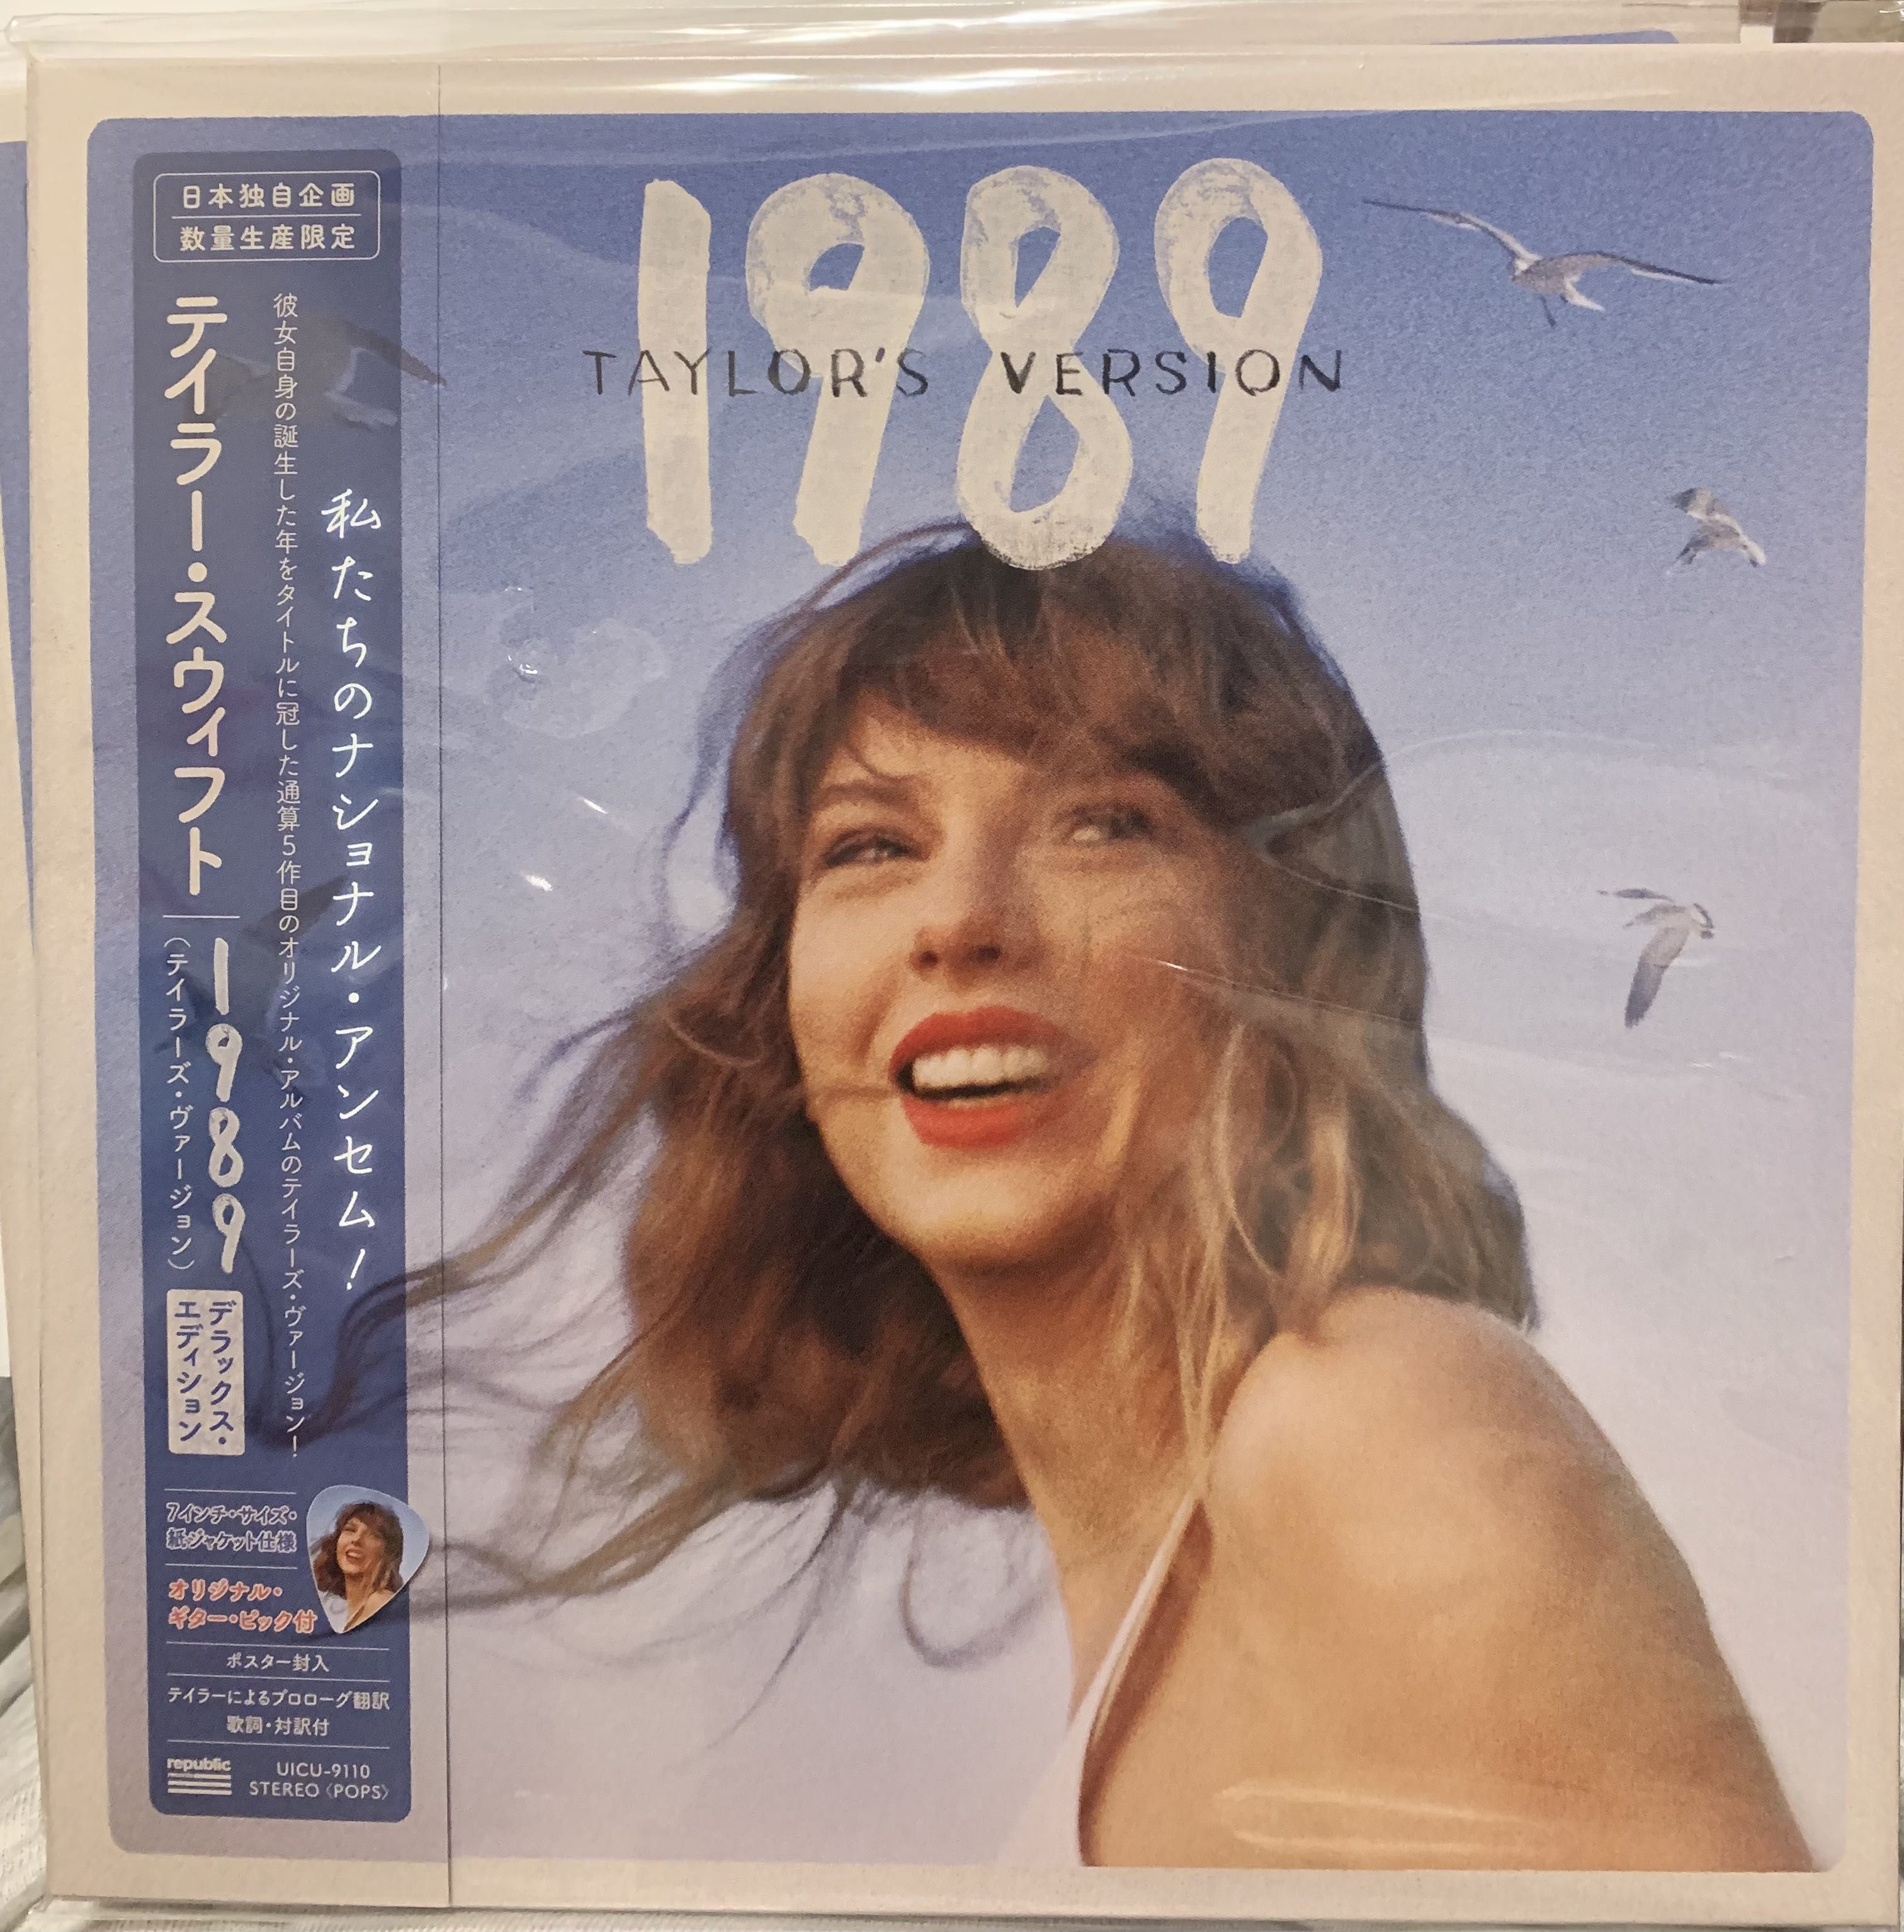 話題の行列 taylor 限定盤 Version) (Taylor's 1989 swift 洋楽 - dev ...